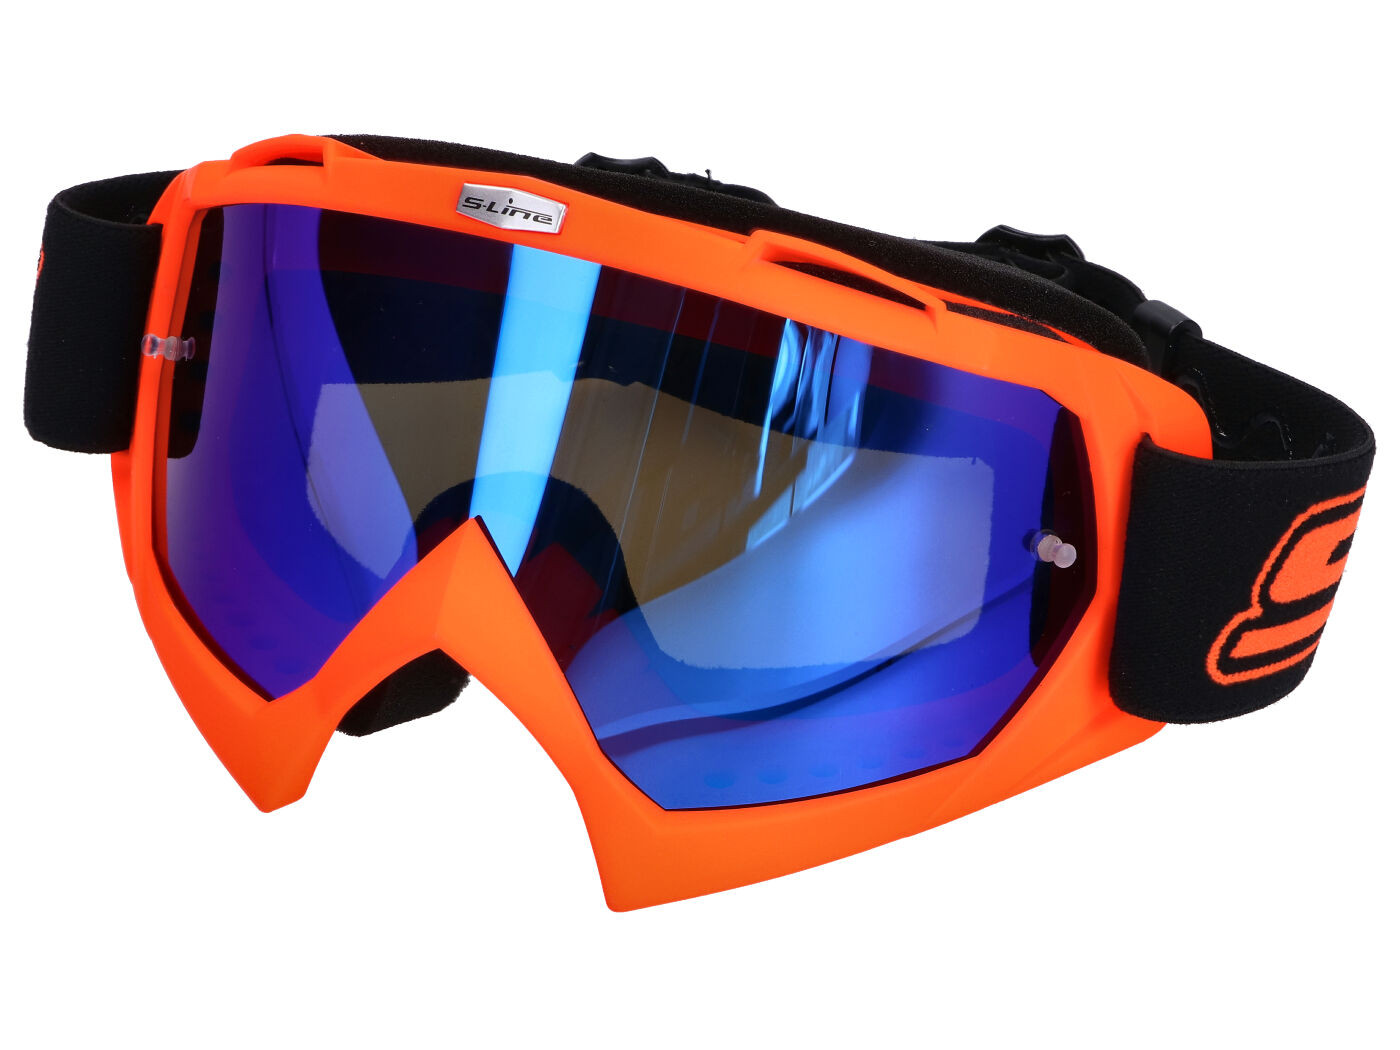 MX szemüveg S-Line narancssárga - Irídium kék